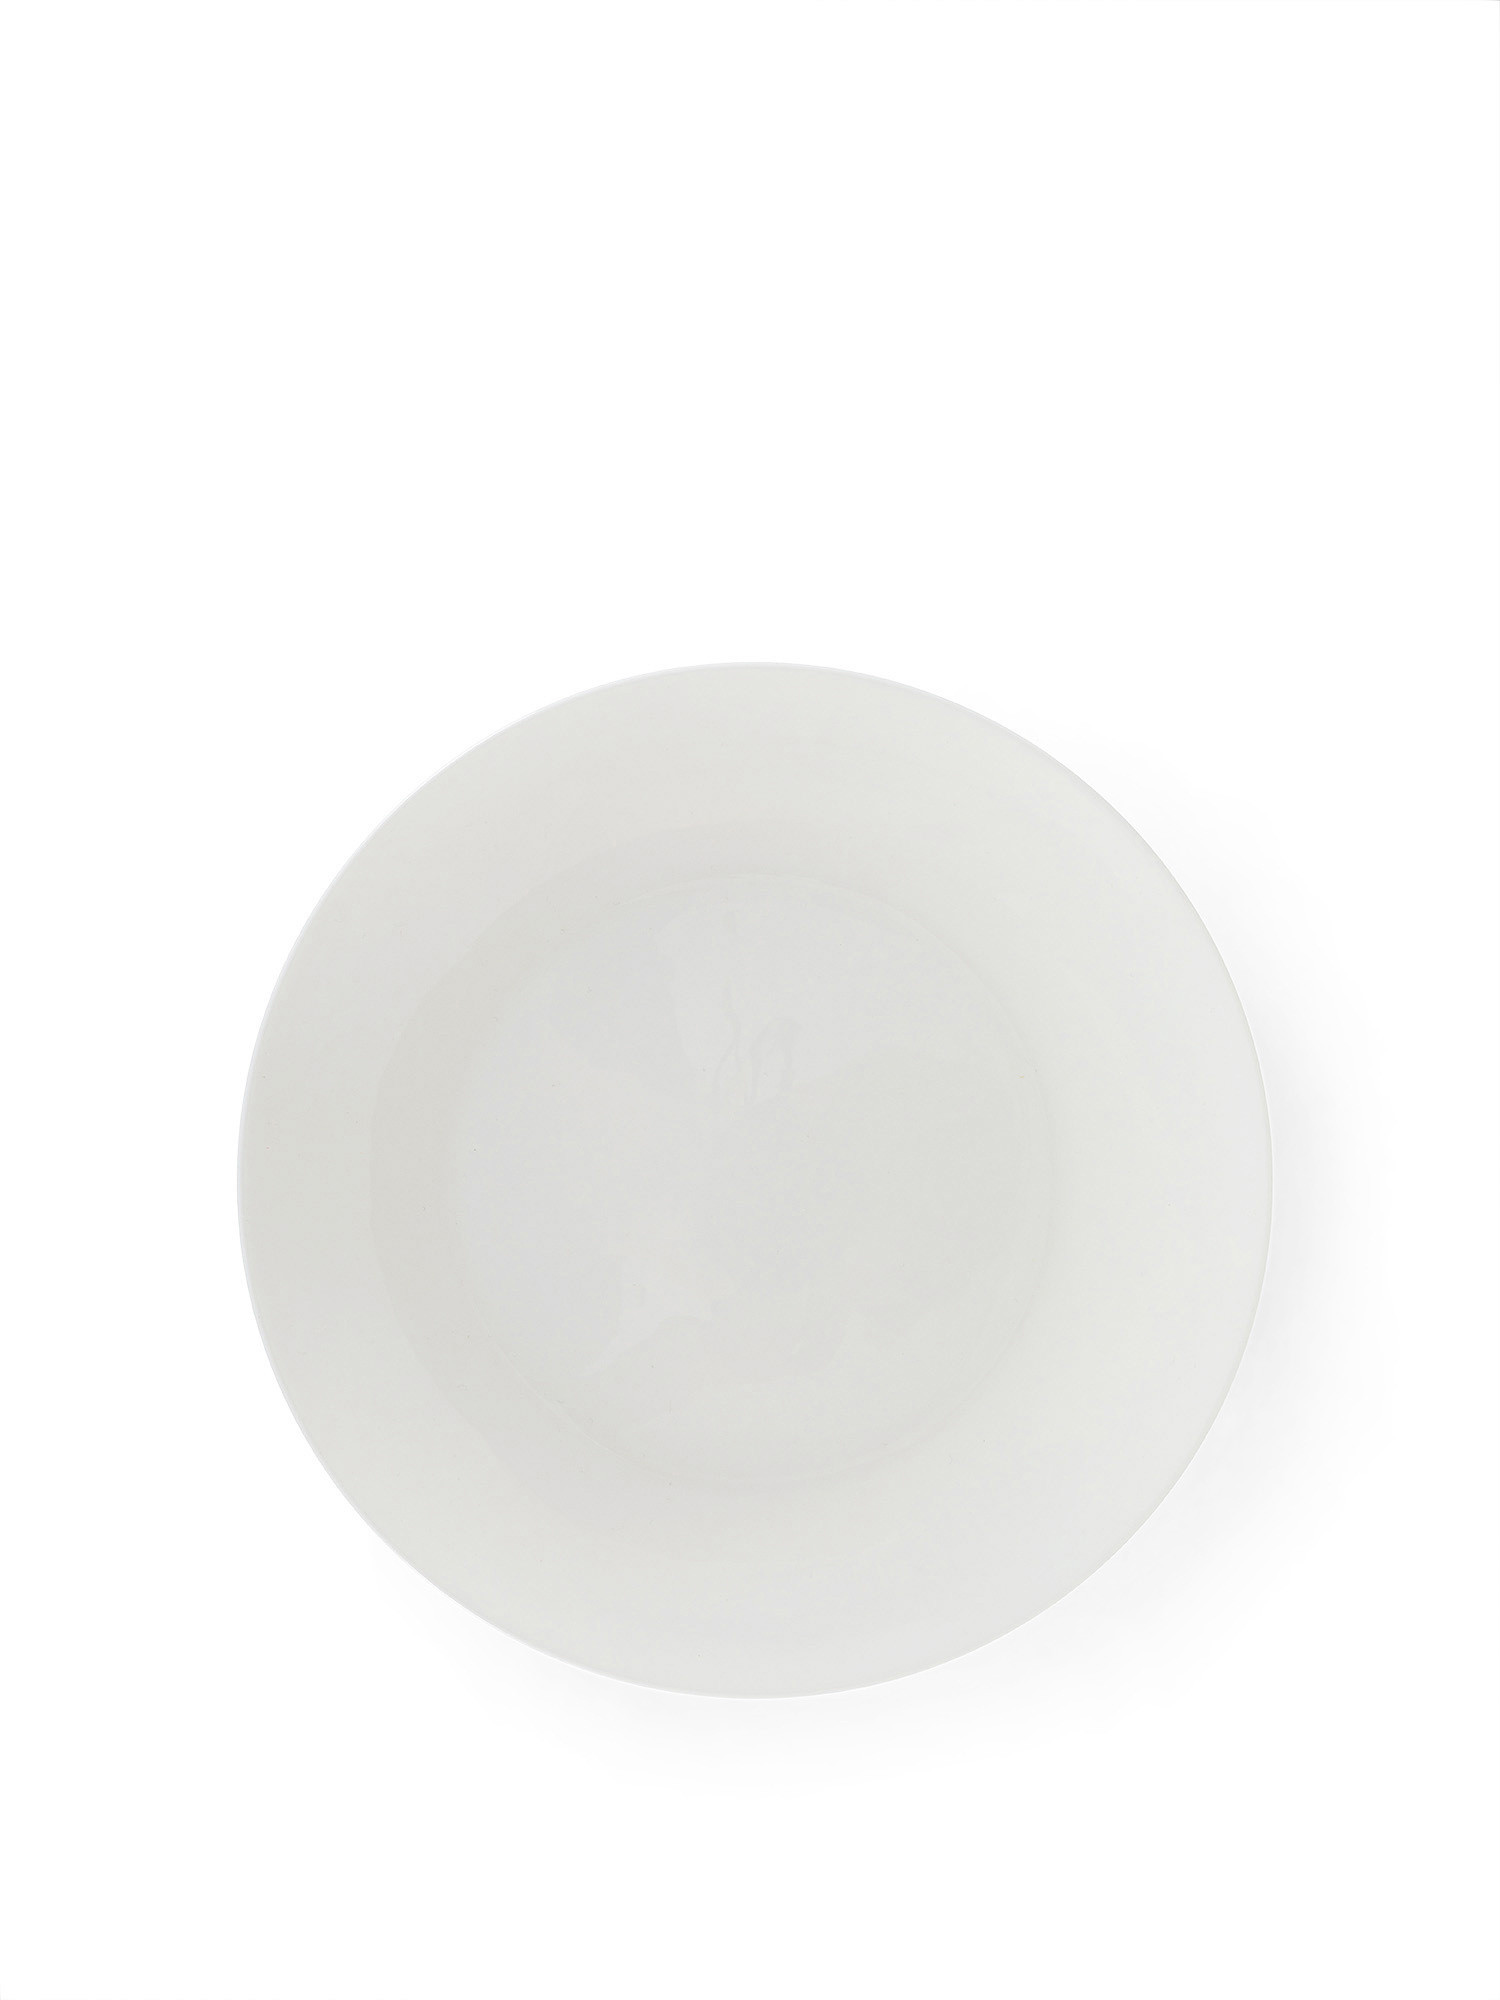 Rosanna new bone china fruit plate, White, large image number 0